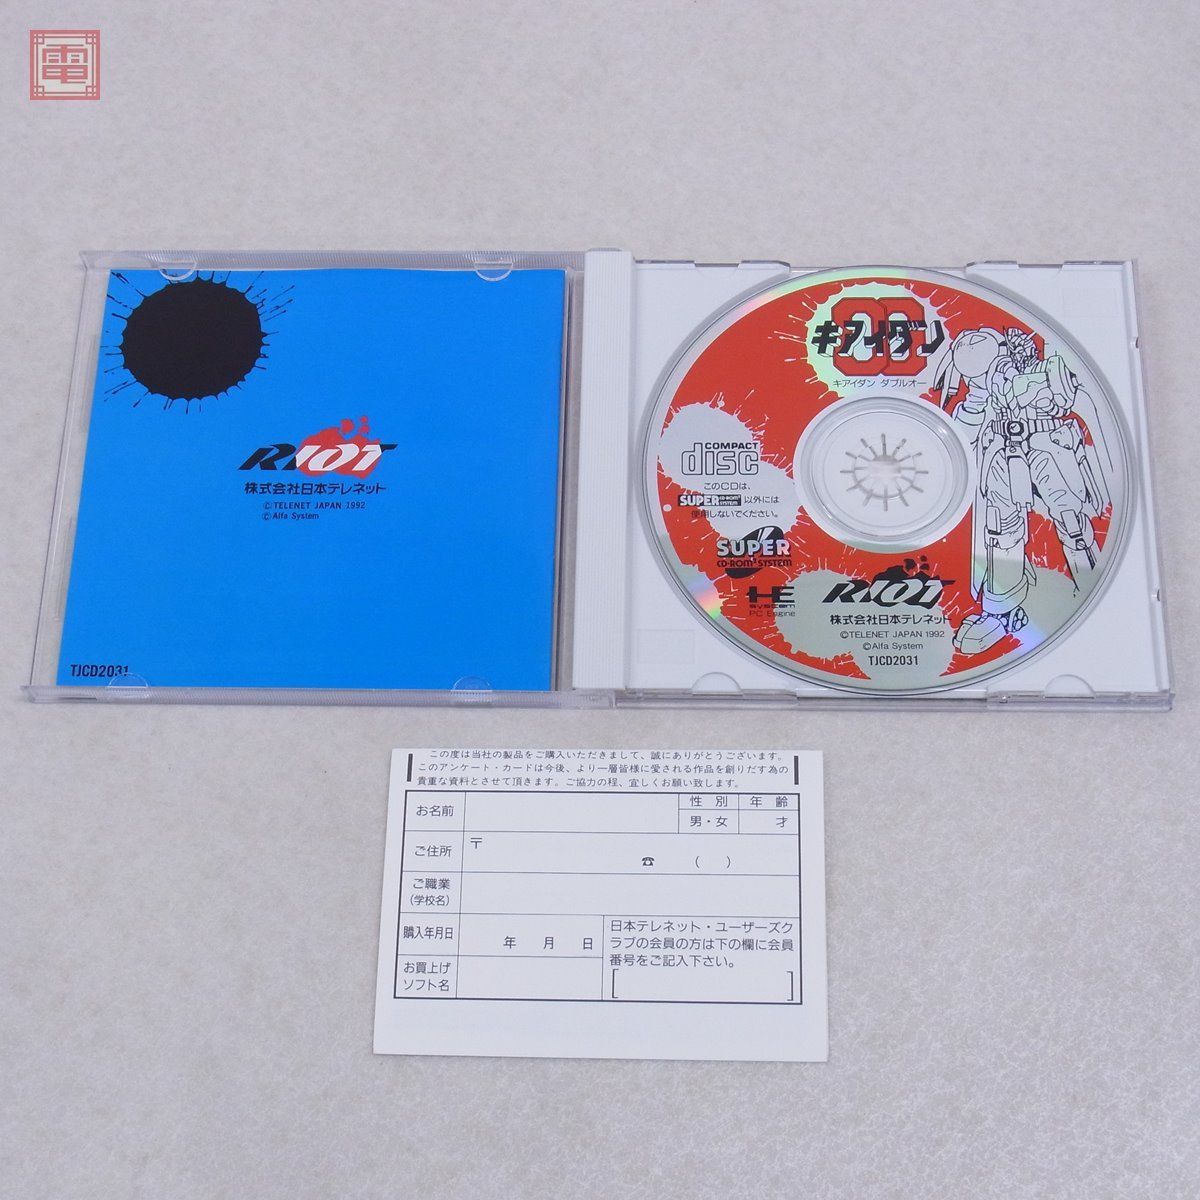 キアイダンOOダブルオー PCエンジンSUPER CD-ROM2 高質で安価 9000円